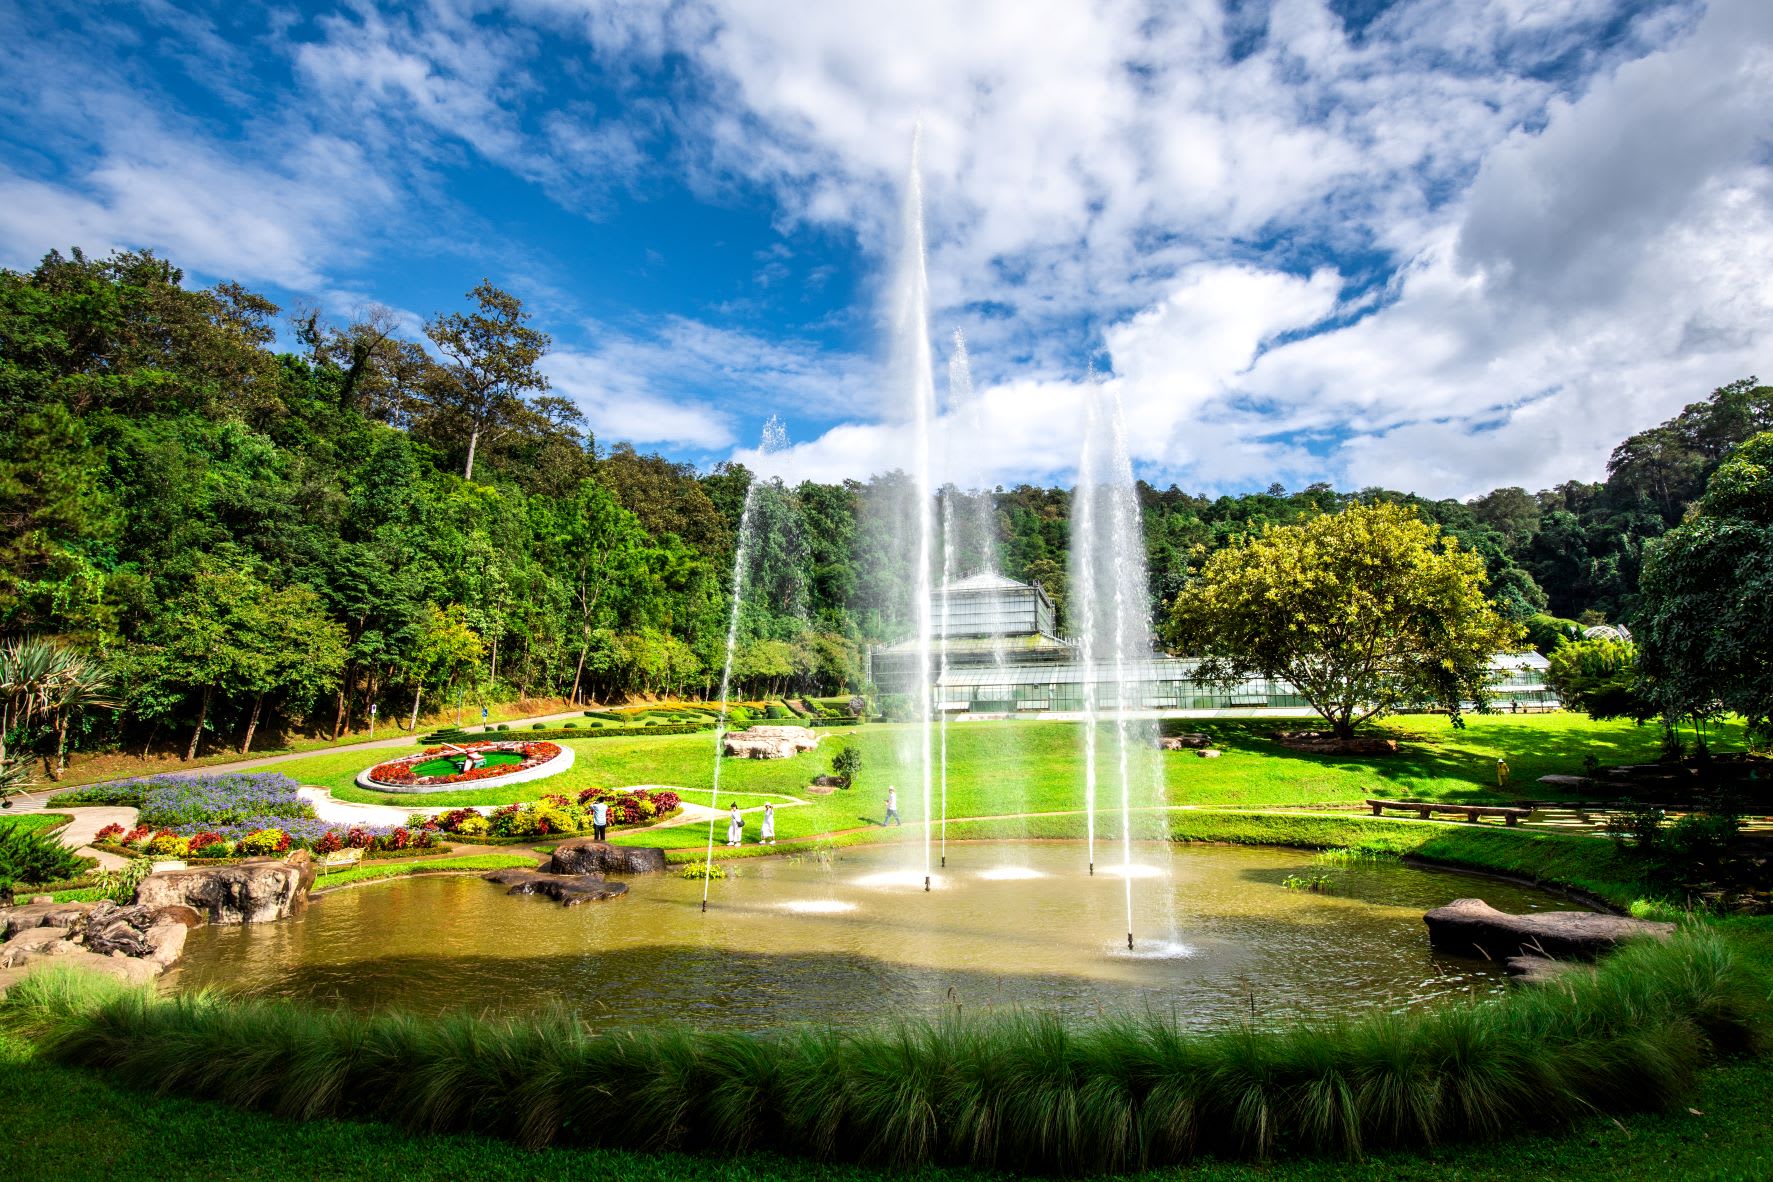 สวนพฤษศาสตร์สมเด็จพระนางเจ้าสิริกิตติ์ Queen Sirikit Botanic Garden